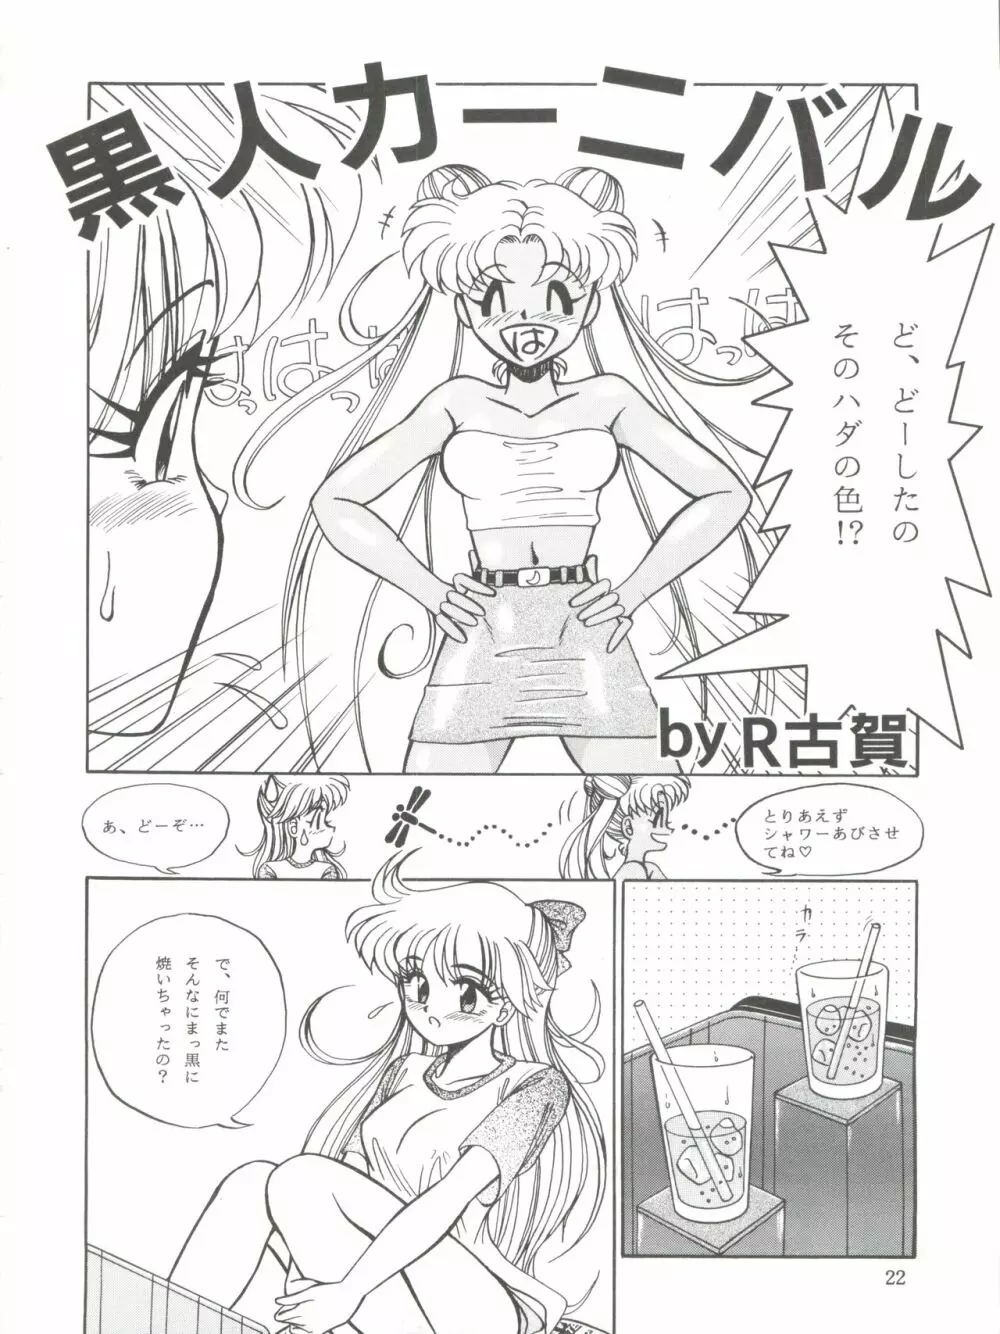 NANIWA-YA FINAL DRESS UP! - page22